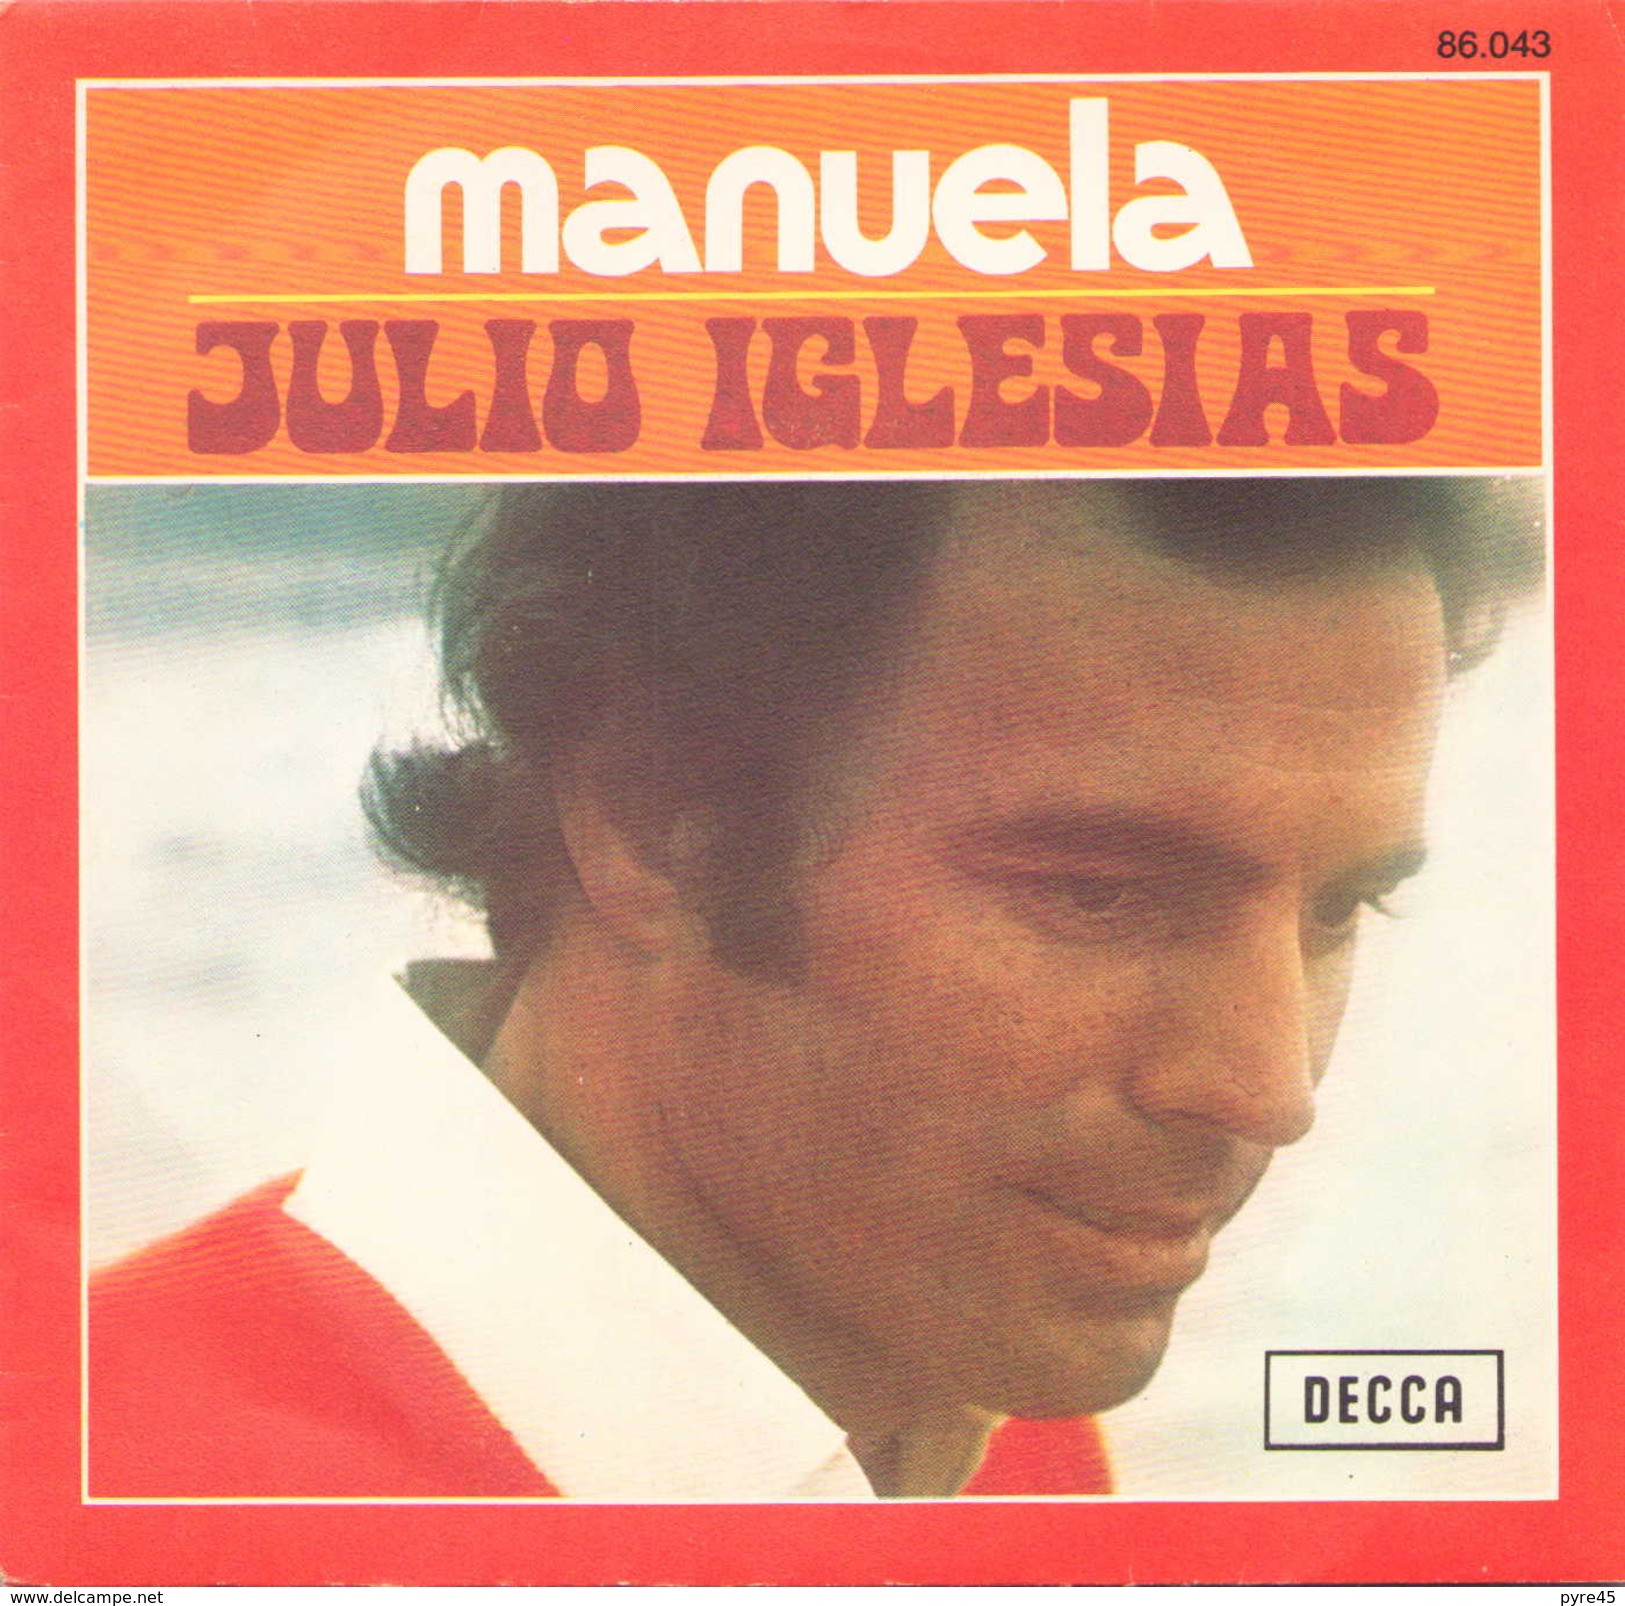 45 TOURS JULIO IGLESIAS DECCA 86043 MANUELA / DICEN - Otros - Canción Española